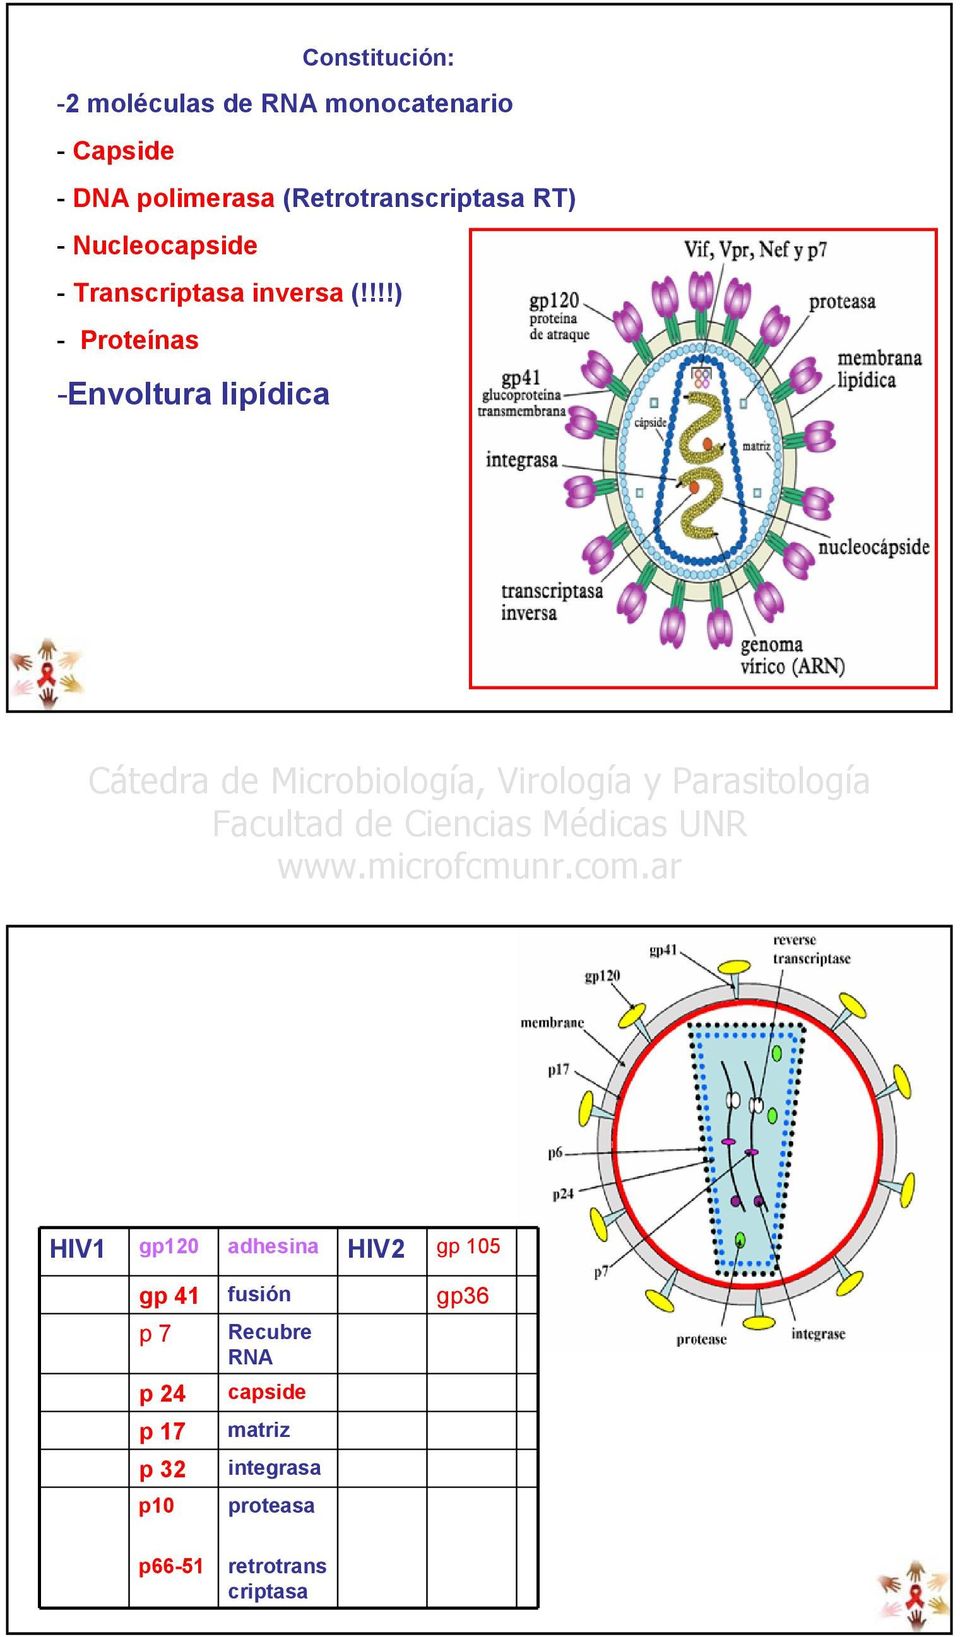 !!!) - Proteínas -Envoltura lipídica HIV1 gp120 adhesina HIV2 gp 105 gp 41